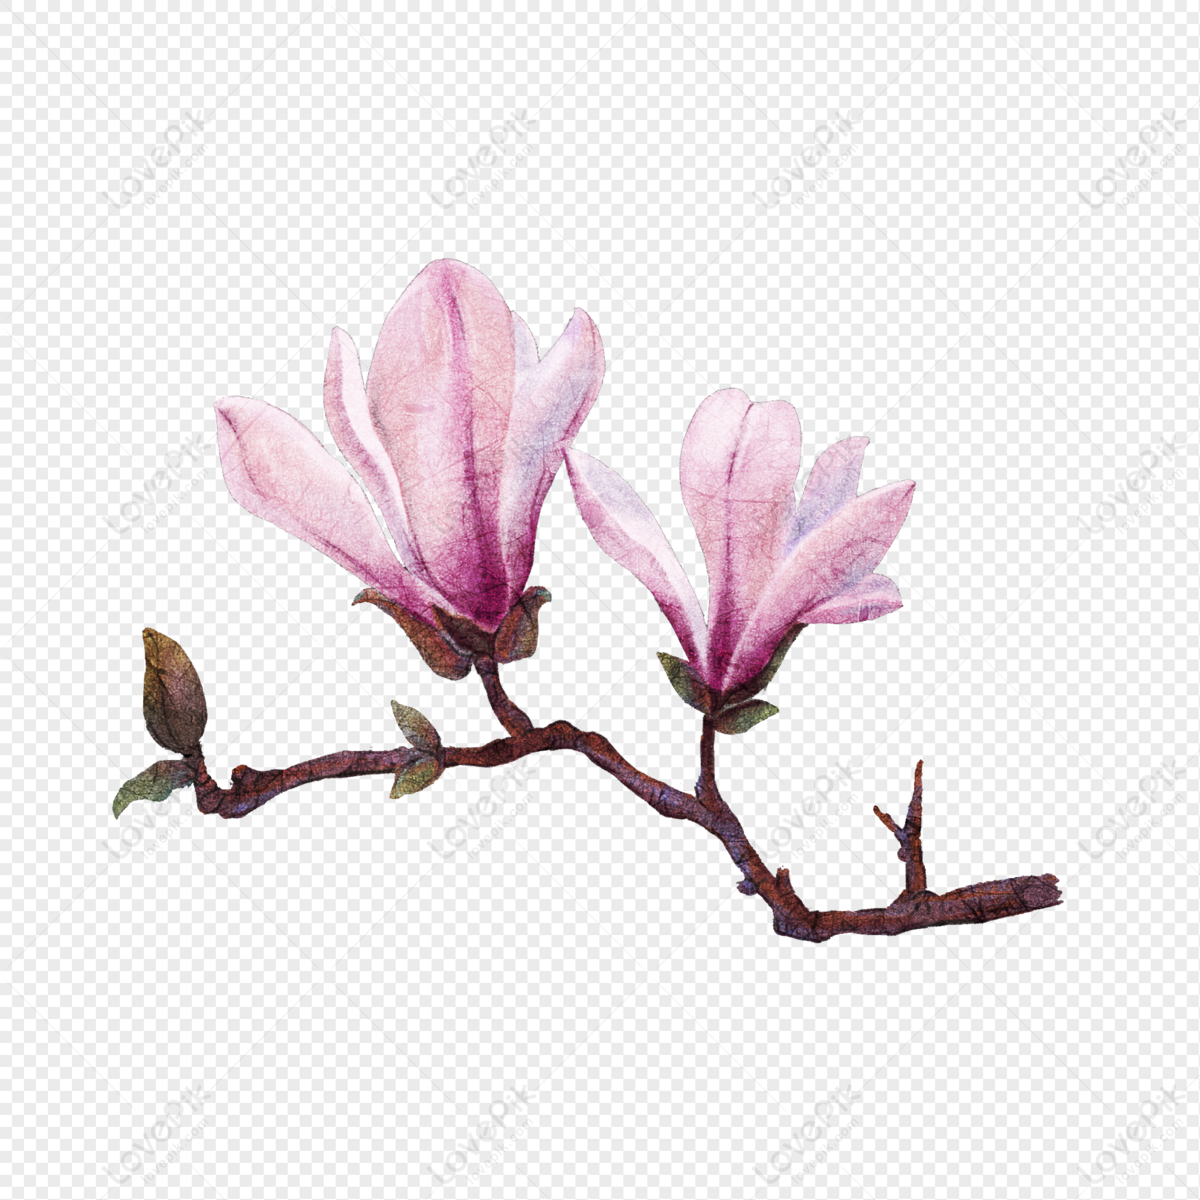 Hãy cùng chiêm ngưỡng hình ảnh về loài hoa mang nét đẹp hoang dại, tươi trẻ của hoa Mộc Lan được vẽ bằng tay và được xuất hiện dưới dạng PNG để bạn có thể sử dụng trong nhiều mục đích khác nhau.